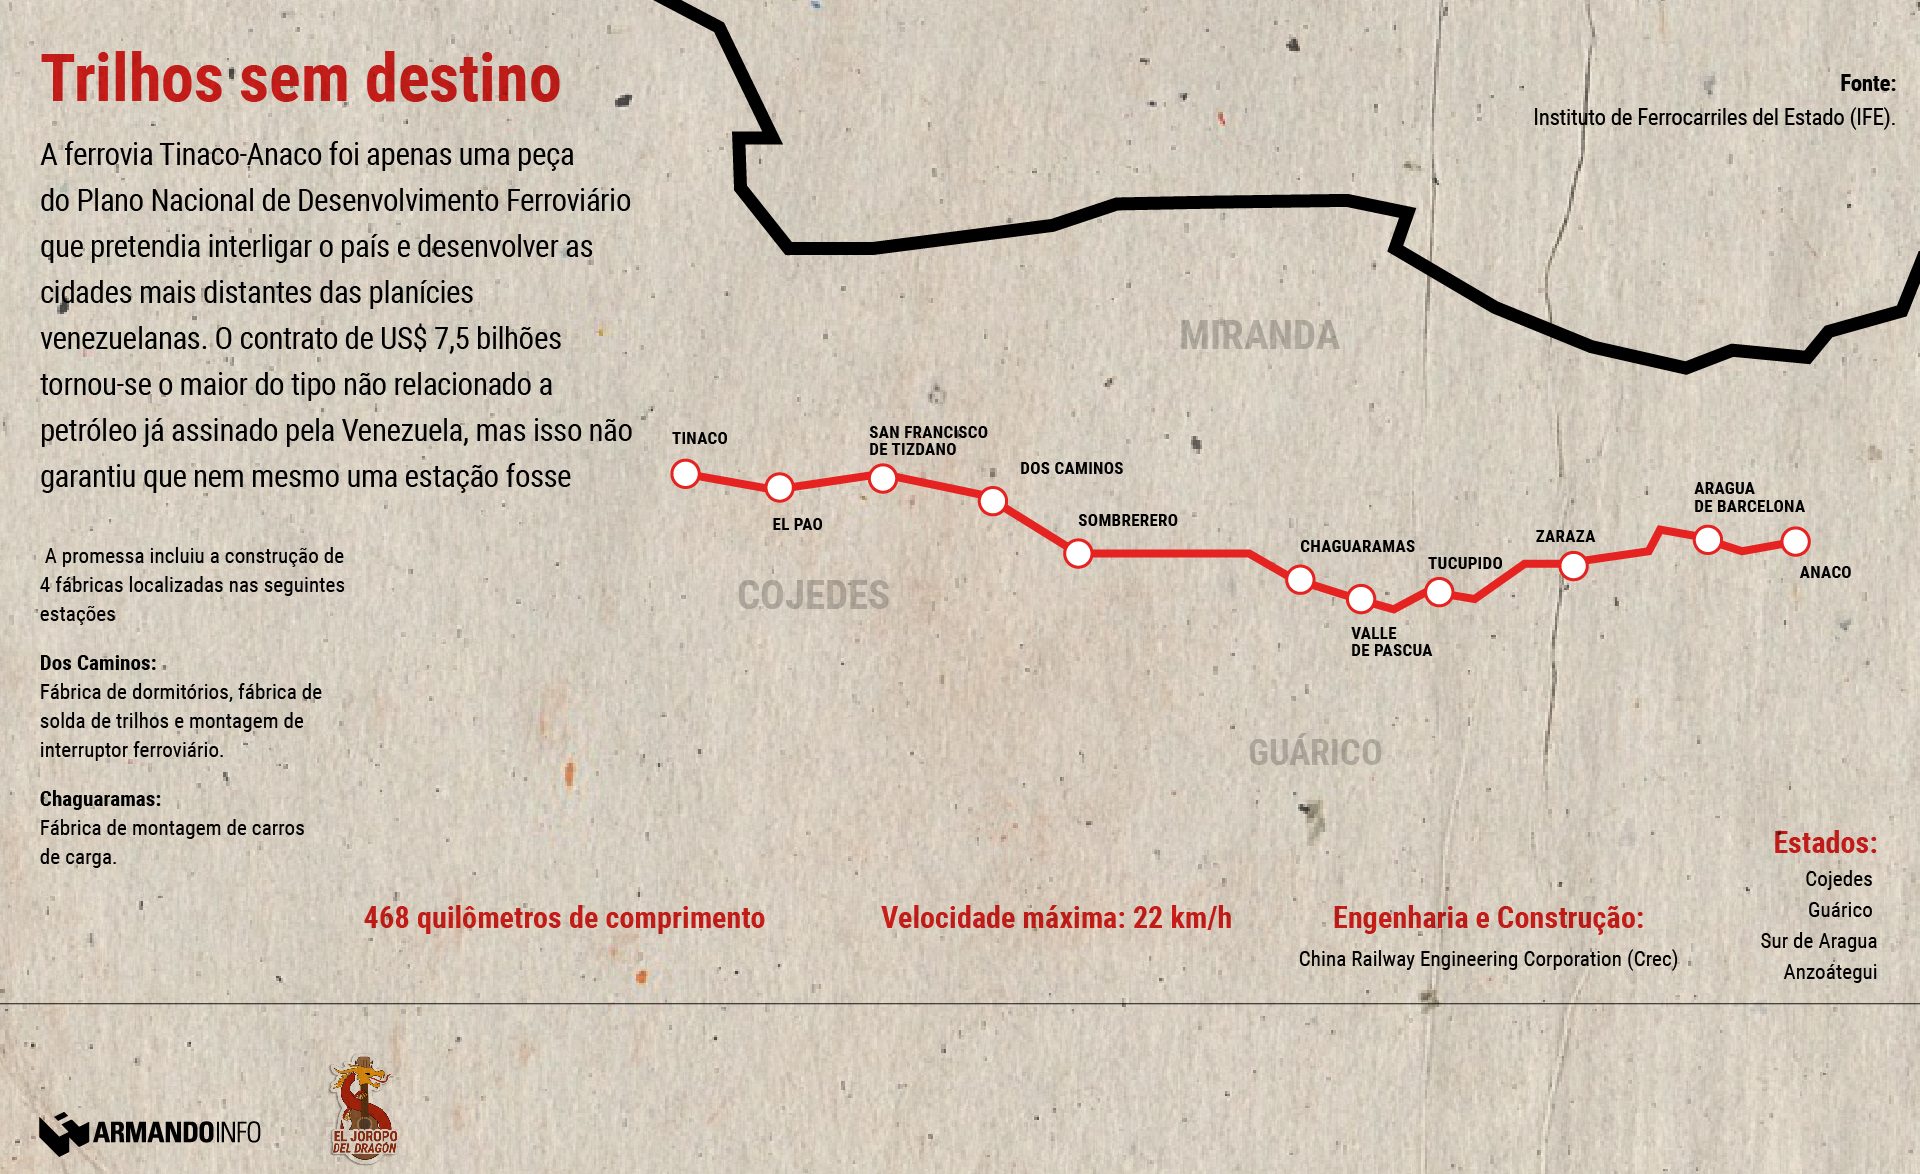 gráfico mostrando as estações de trem planejadas de Tinaco-Anaco